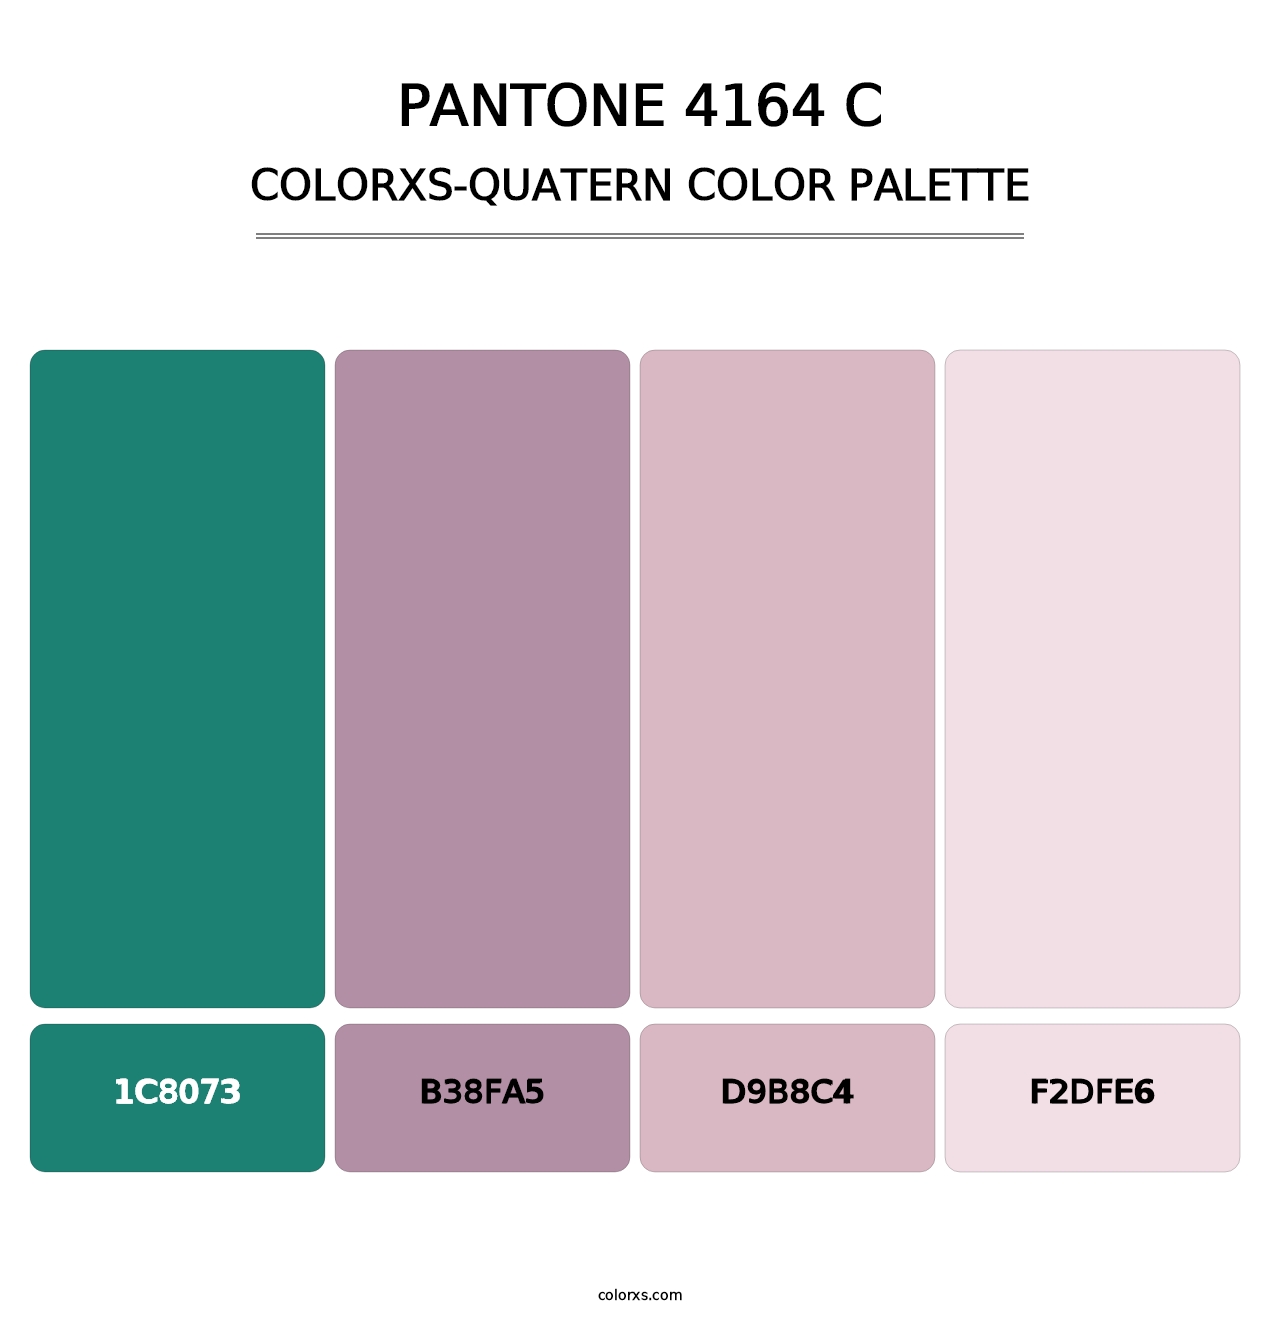 PANTONE 4164 C - Colorxs Quatern Palette